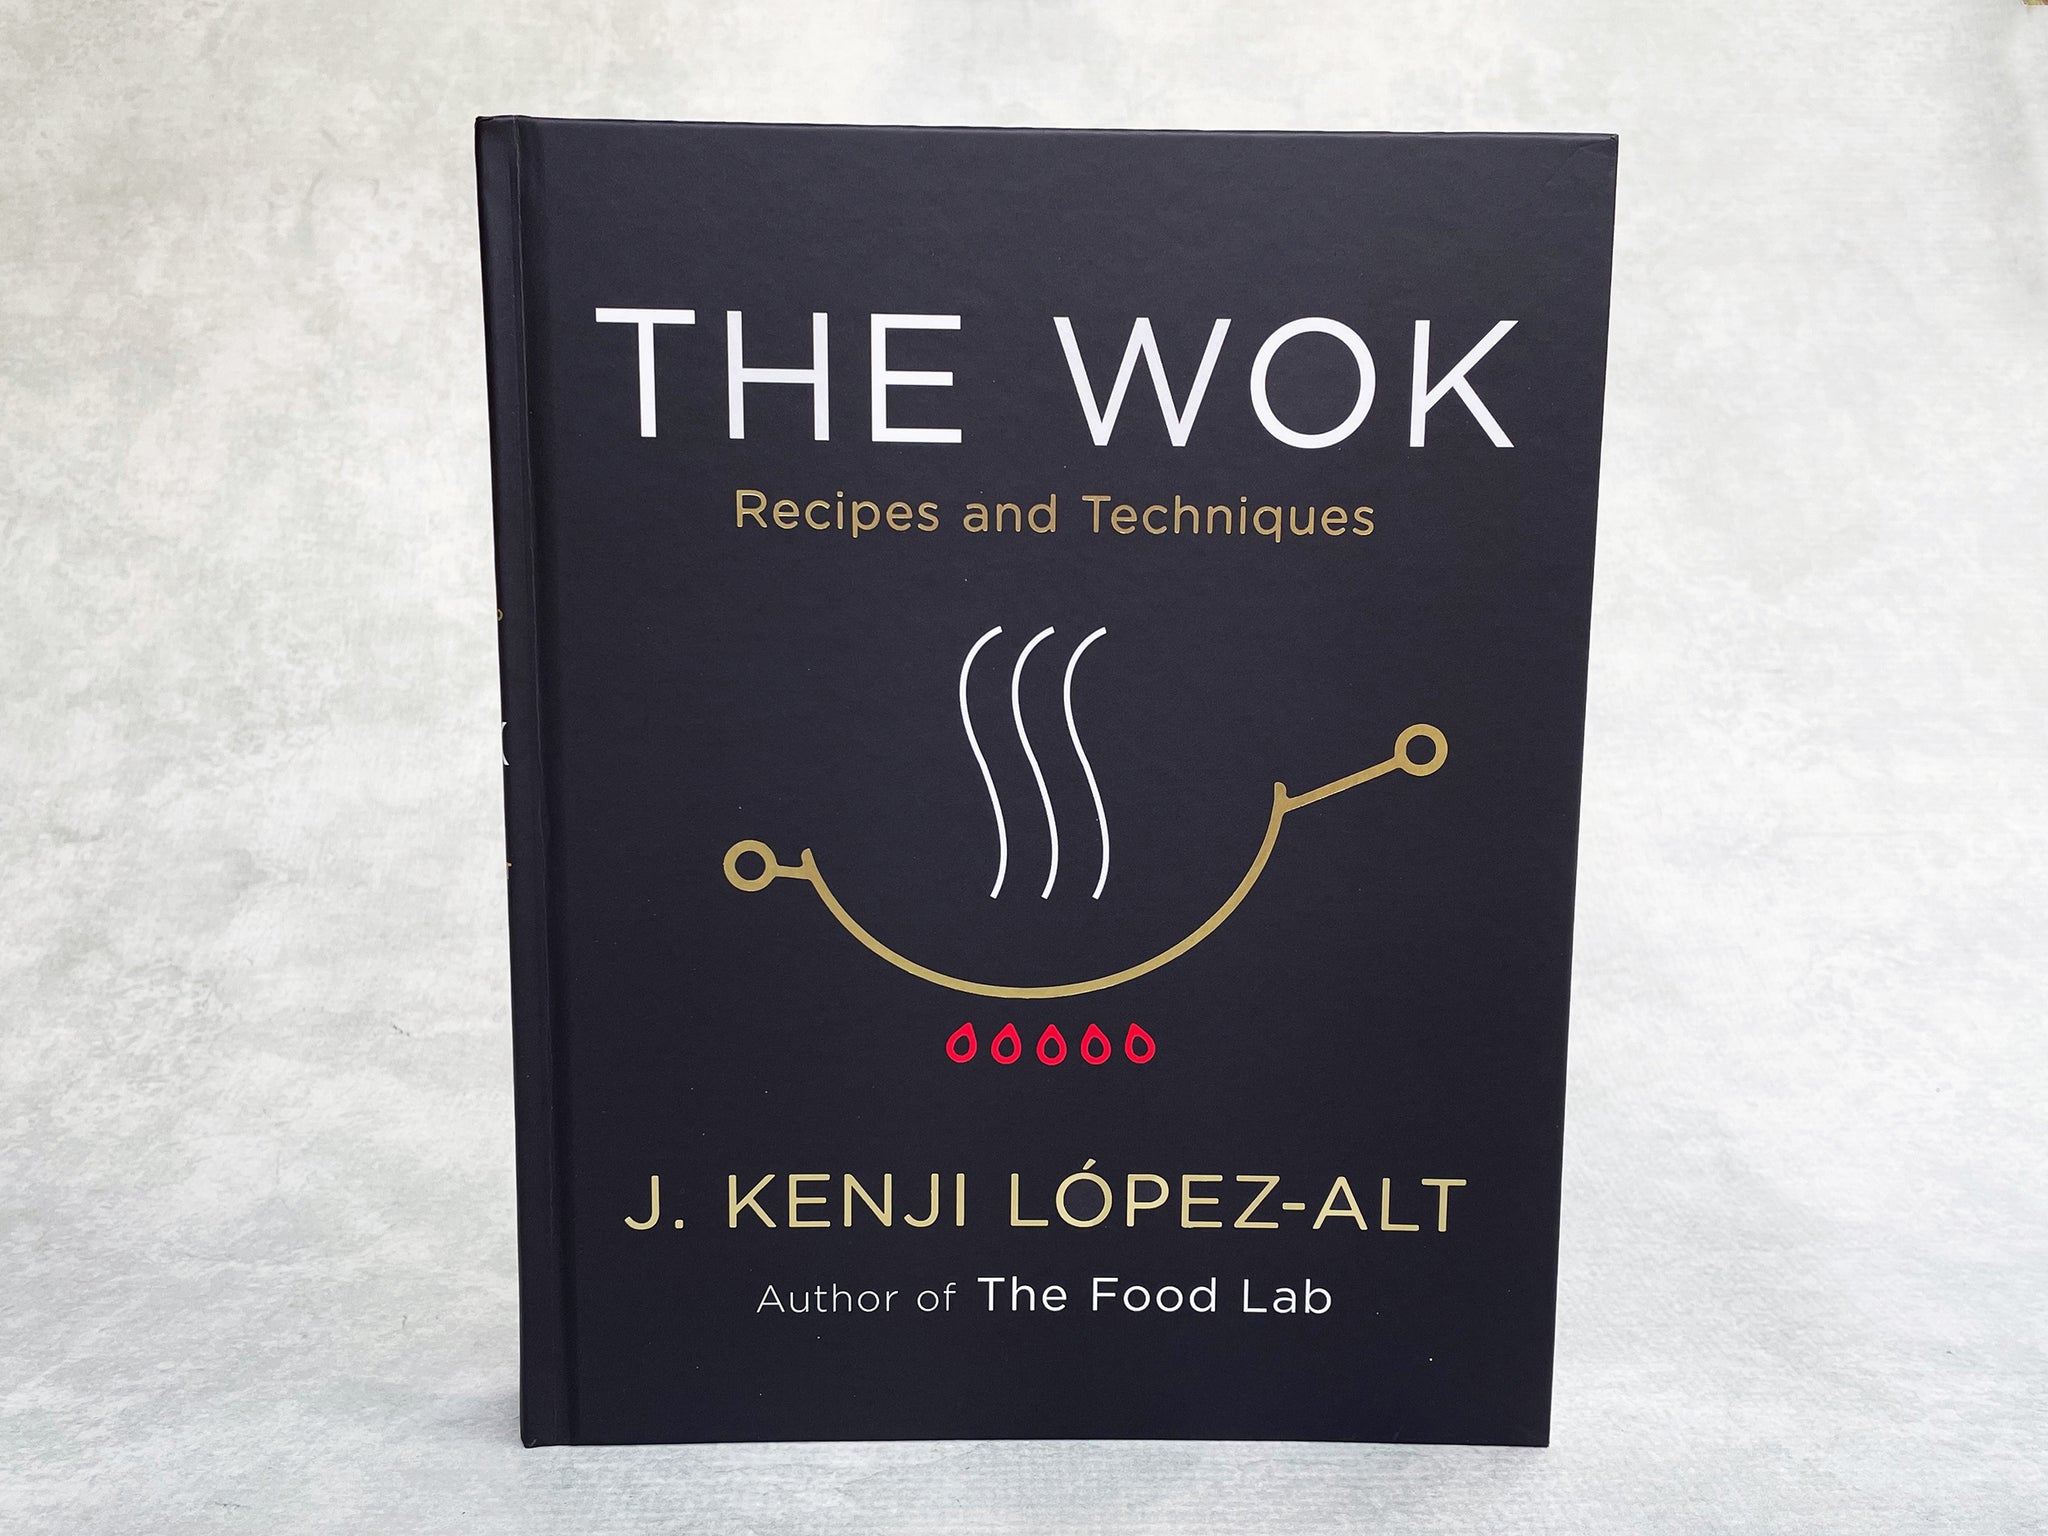 The Wok by J Kenji Lopez-Alt